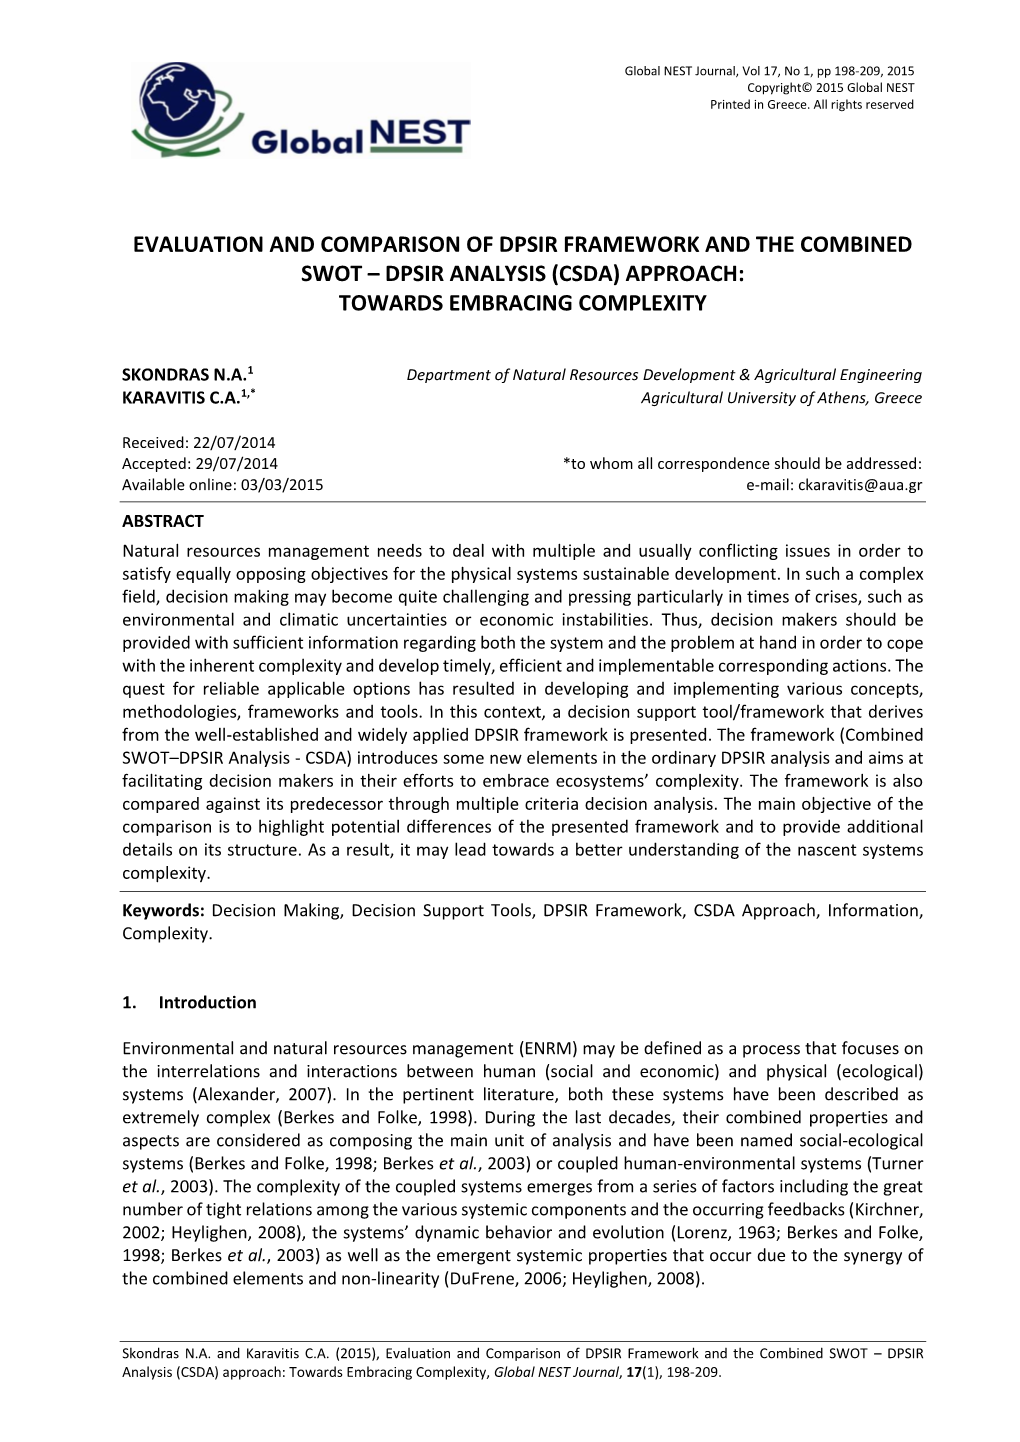 Dpsir Analysis (Csda) Approach: Towards Embracing Complexity